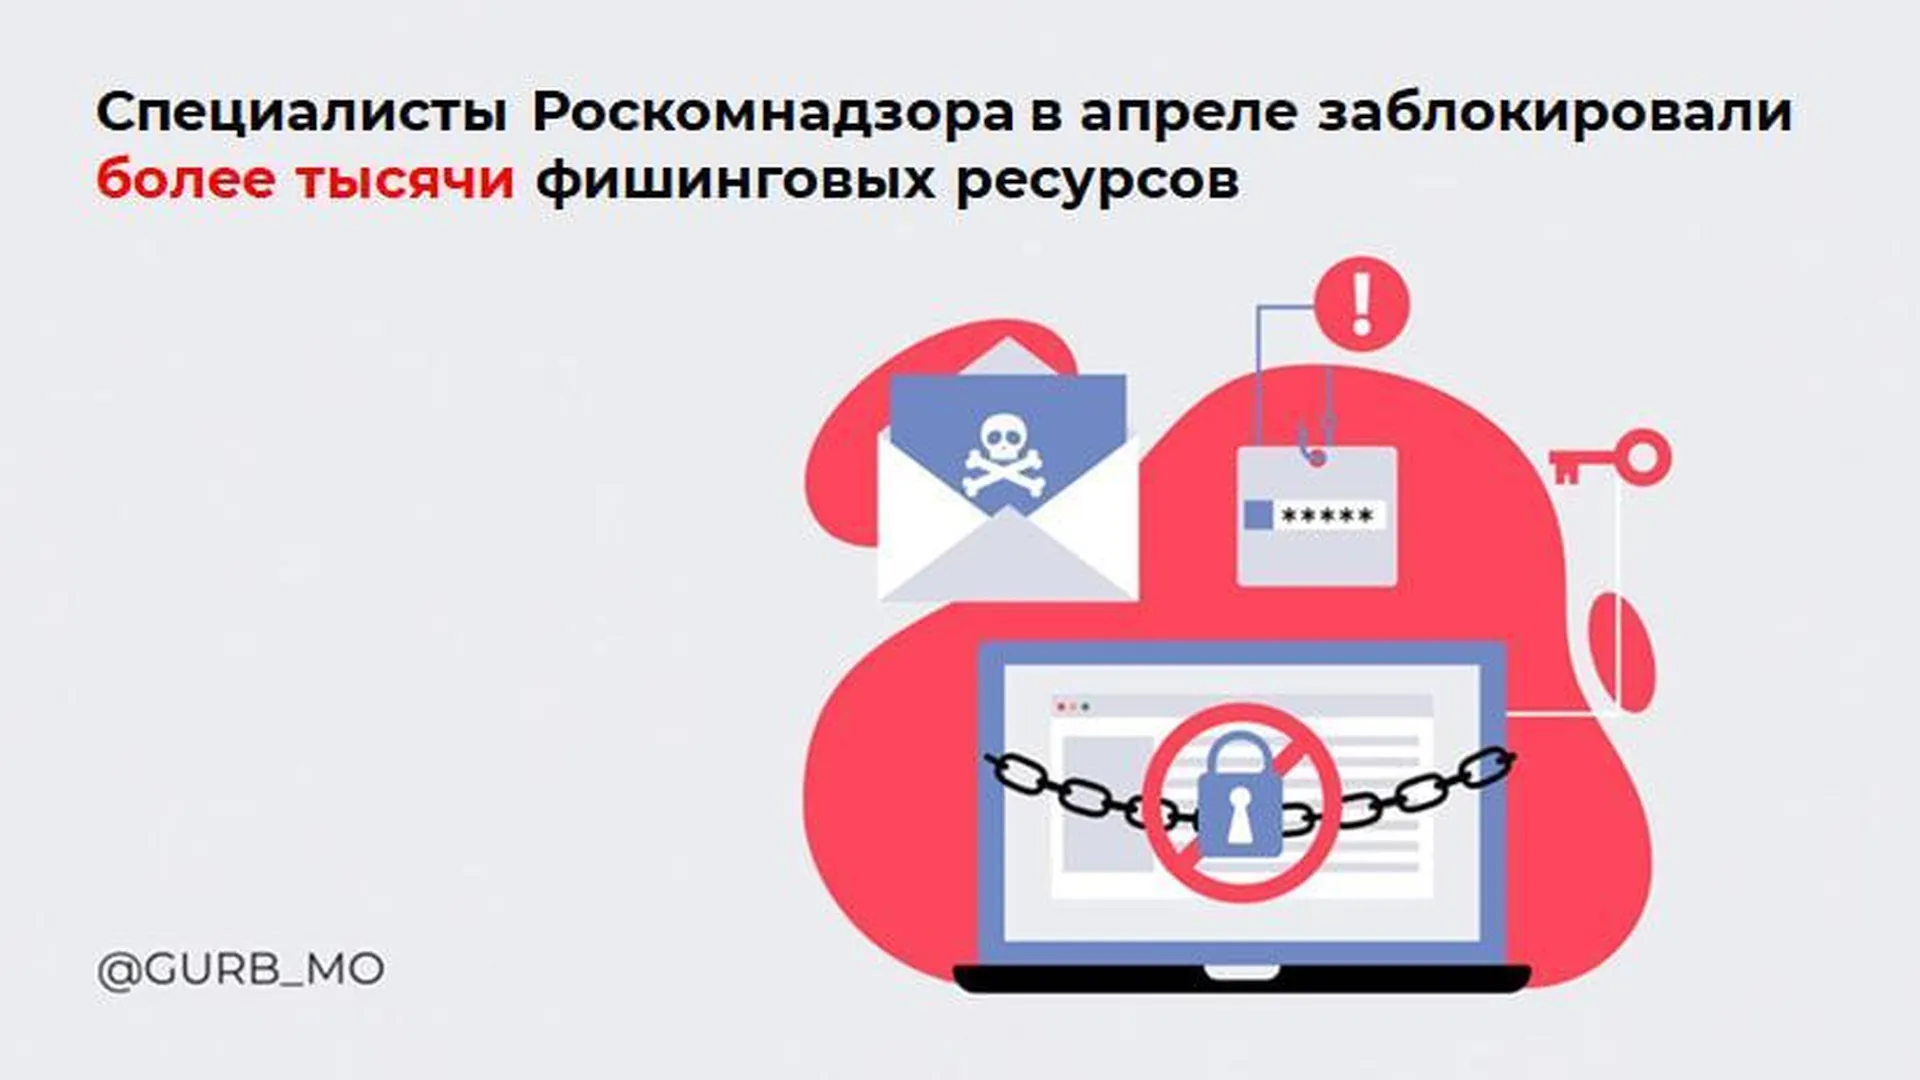 Специалисты Роскомнадзора в апреле заблокировали более 1 тыс фишинговых ресурсов